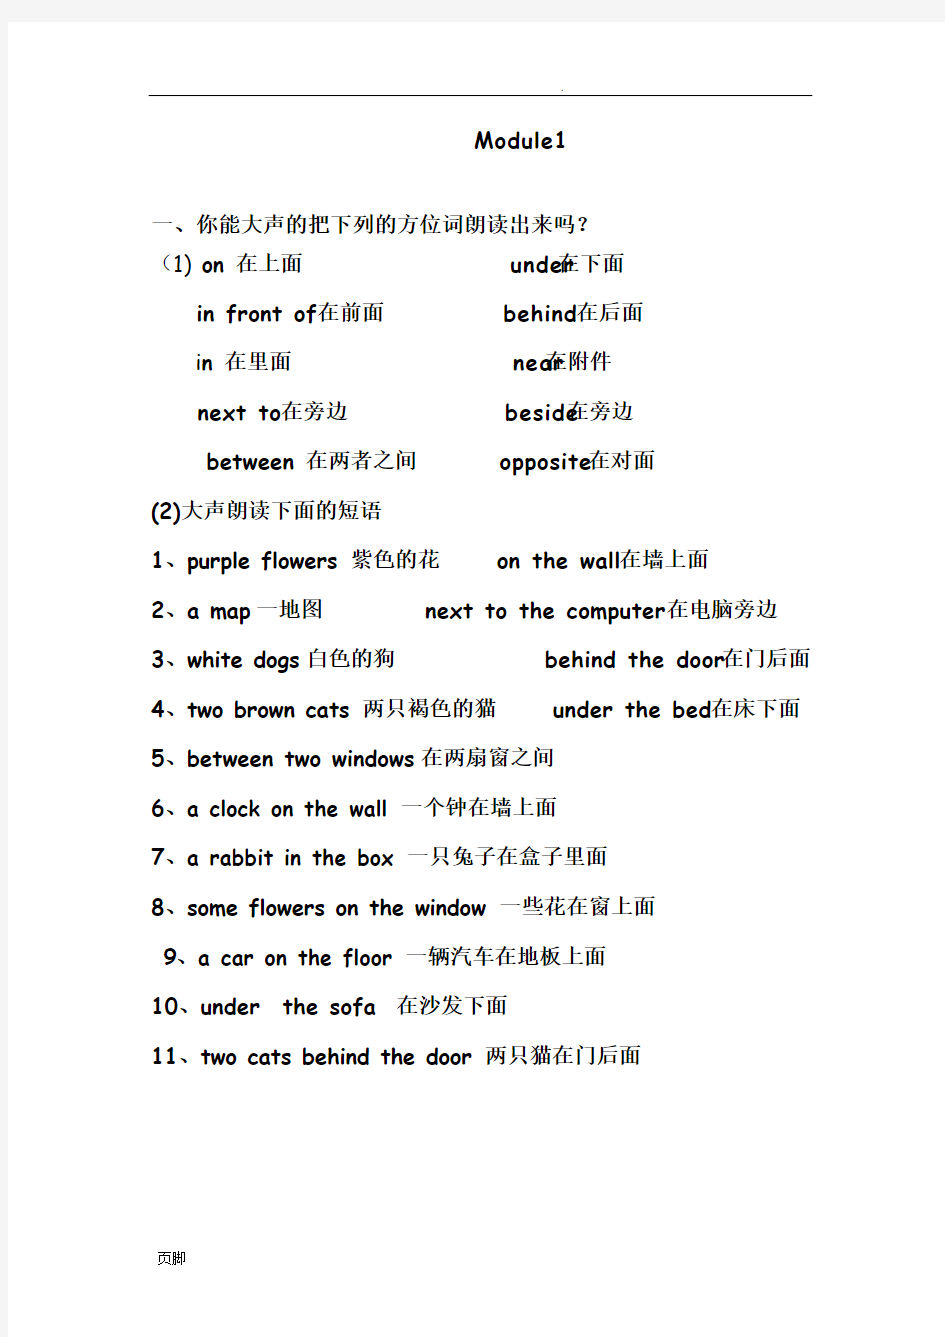 广州版小学英语四年级(上册)英语(全册)复习资料